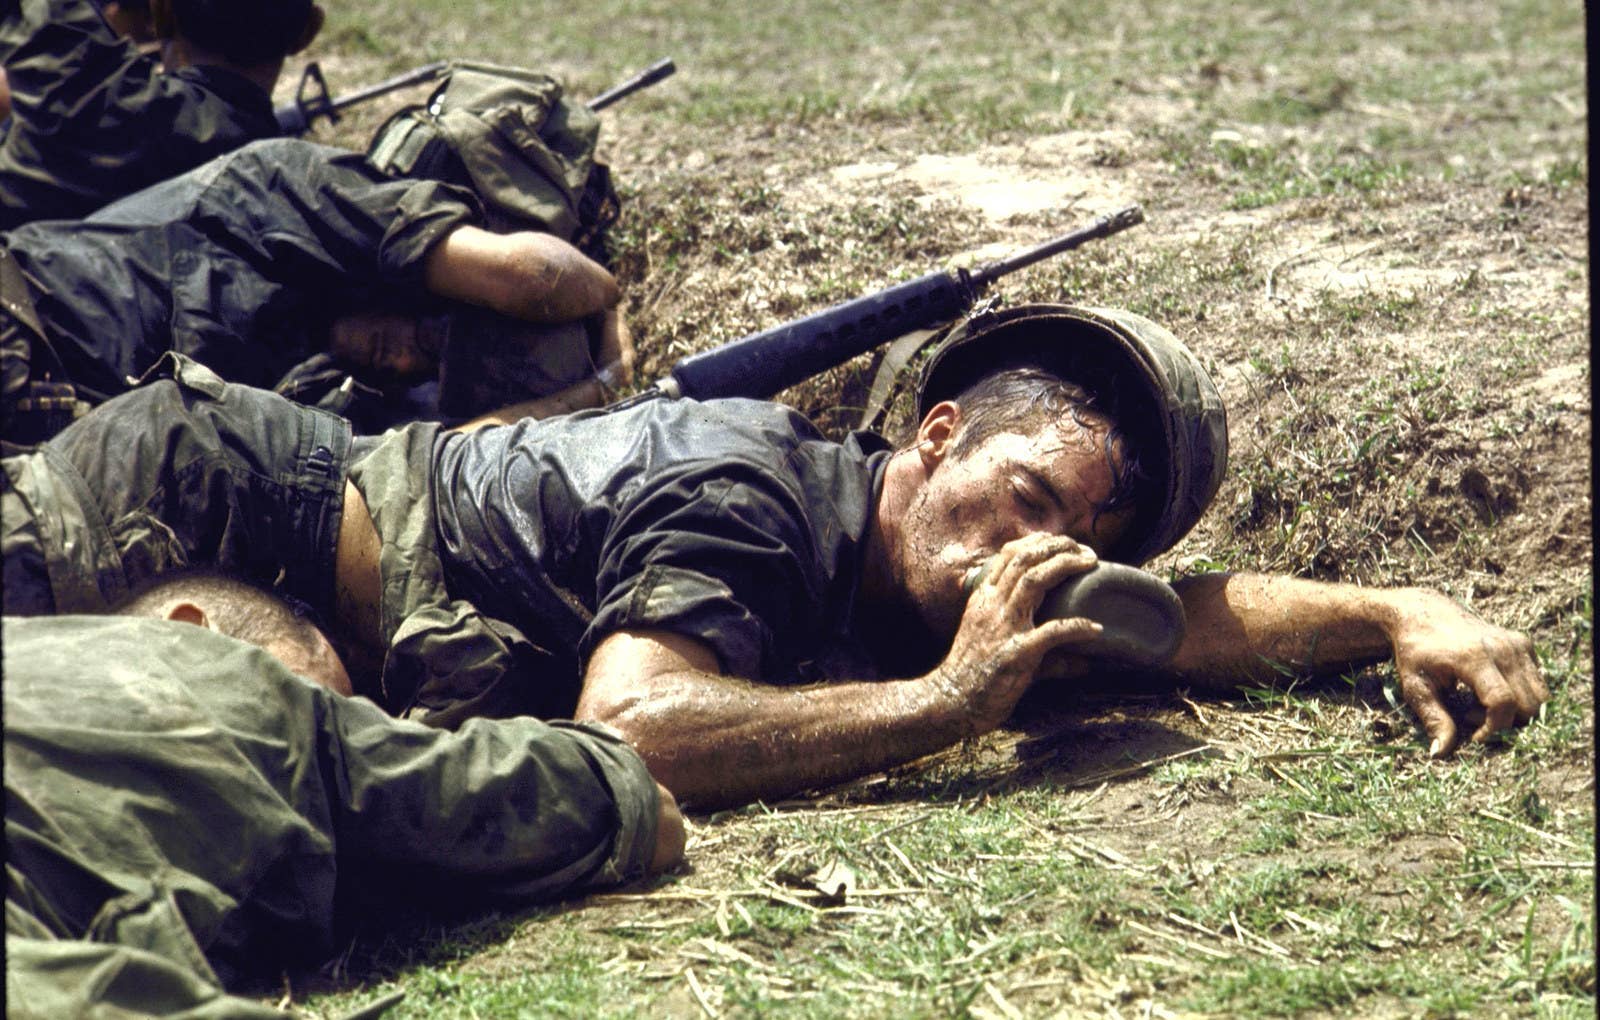 Exausto, um soldado da infantaria americana deita entre camaradas e bebe água de um cantil, próximo à fronteira entre Vietnã e Camboja, em 1970.